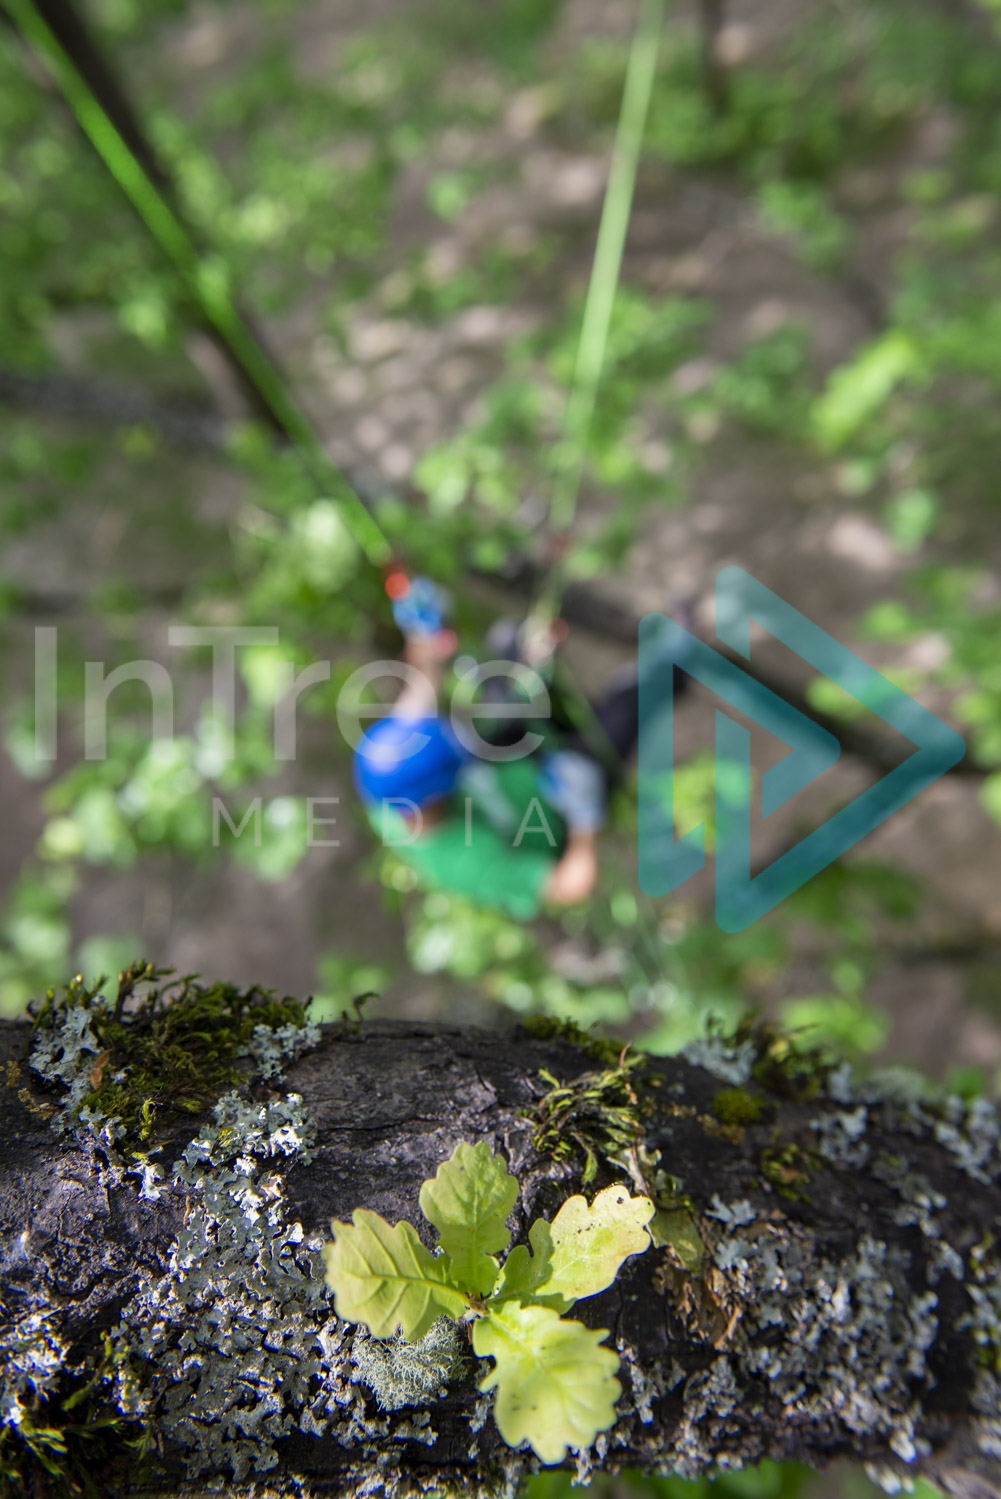 Climbing arborist in oak tree - Arborist Stock Photo 001-21-7375